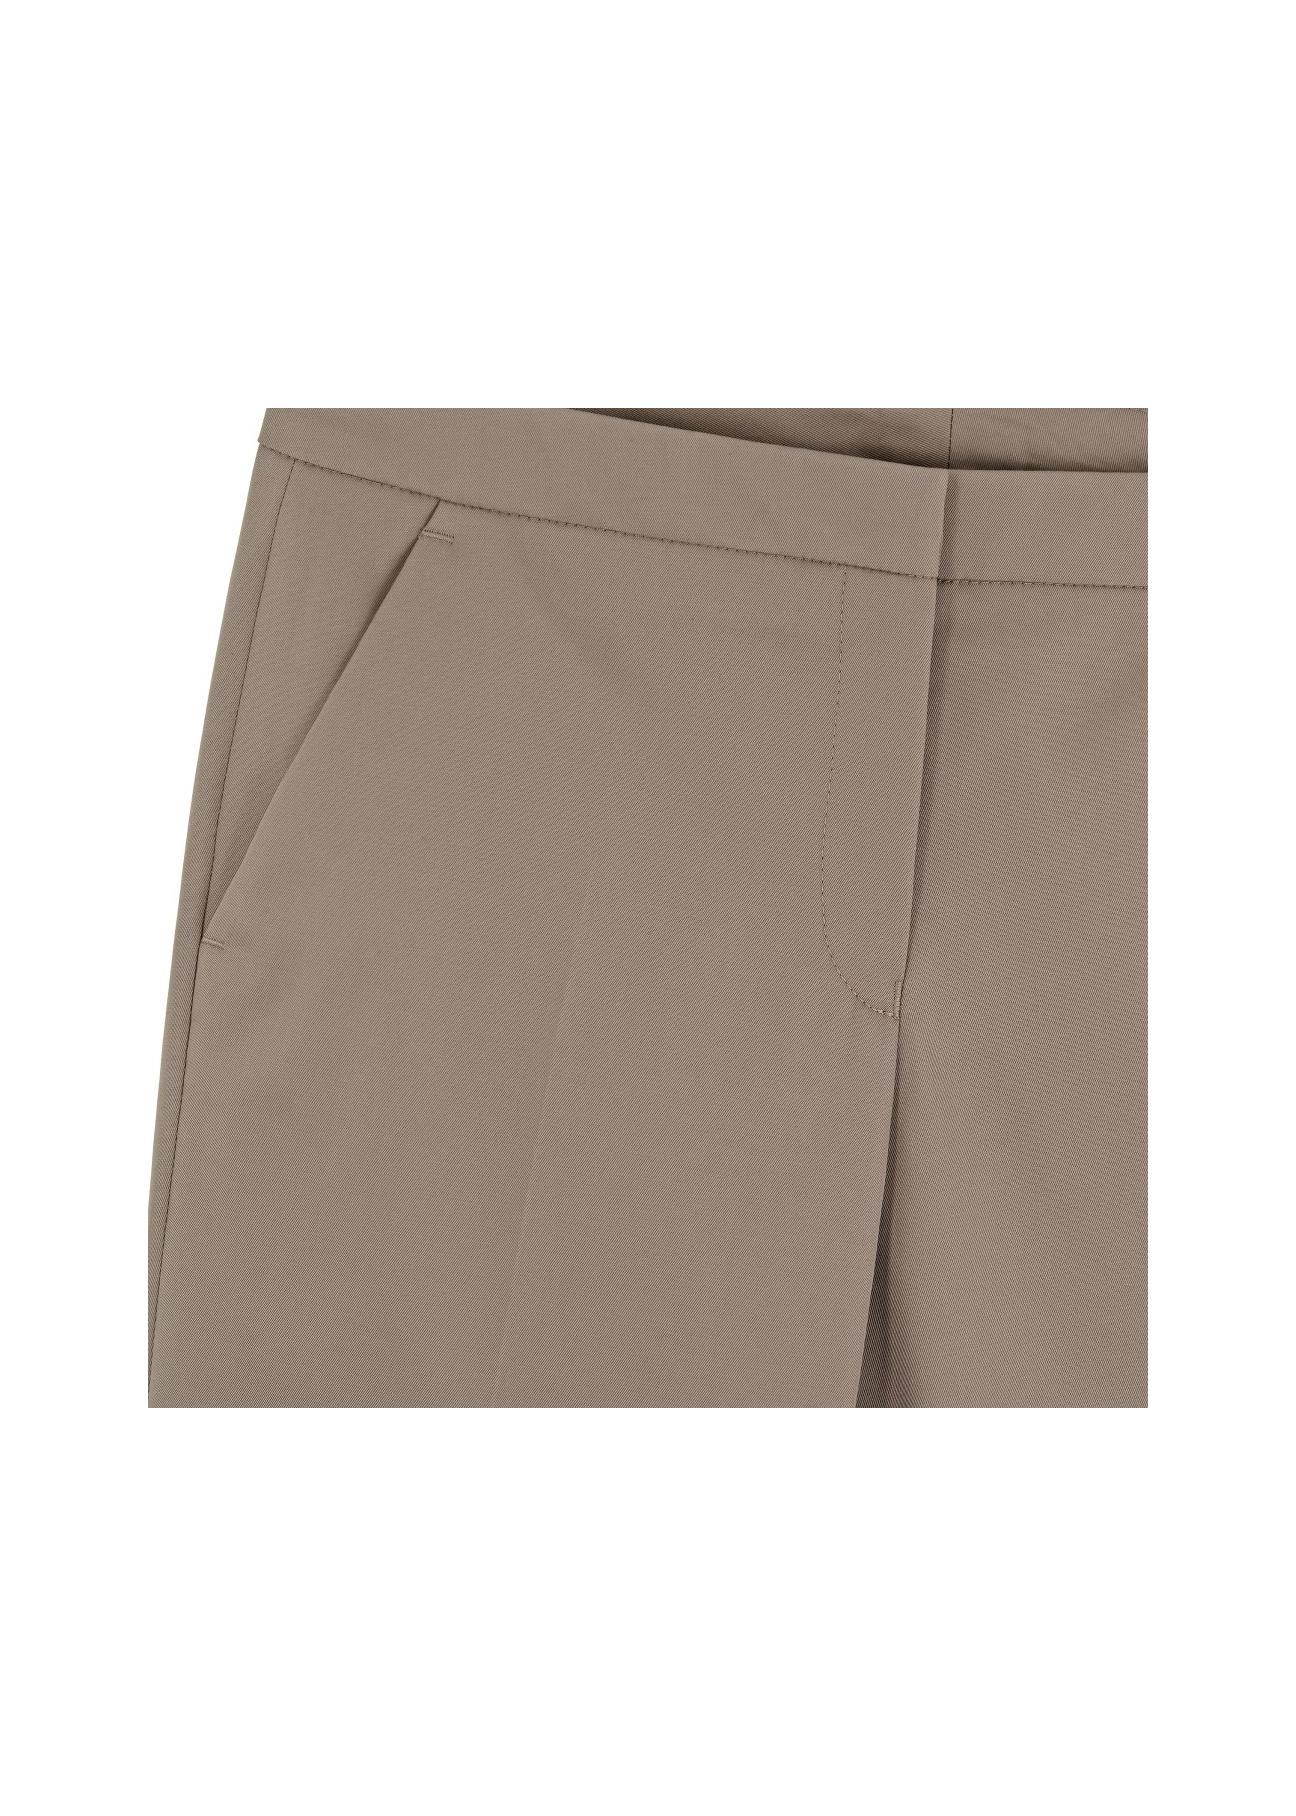 Spodnie damskie SPODT-0014-81(W17)